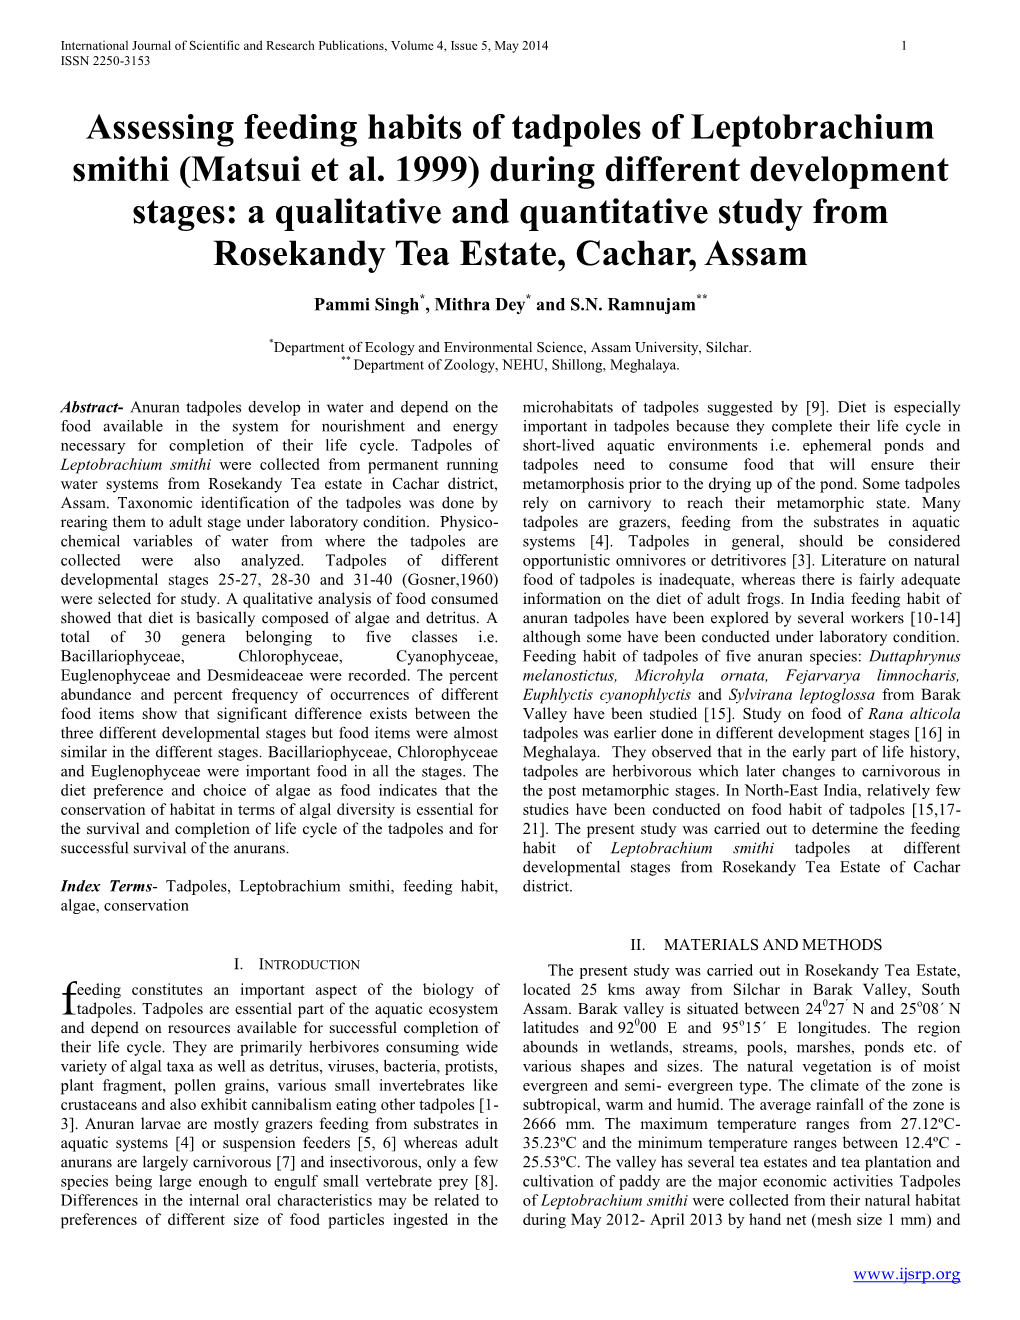 Assessing Feeding Habits of Tadpoles of Leptobrachium Smithi (Matsui Et Al